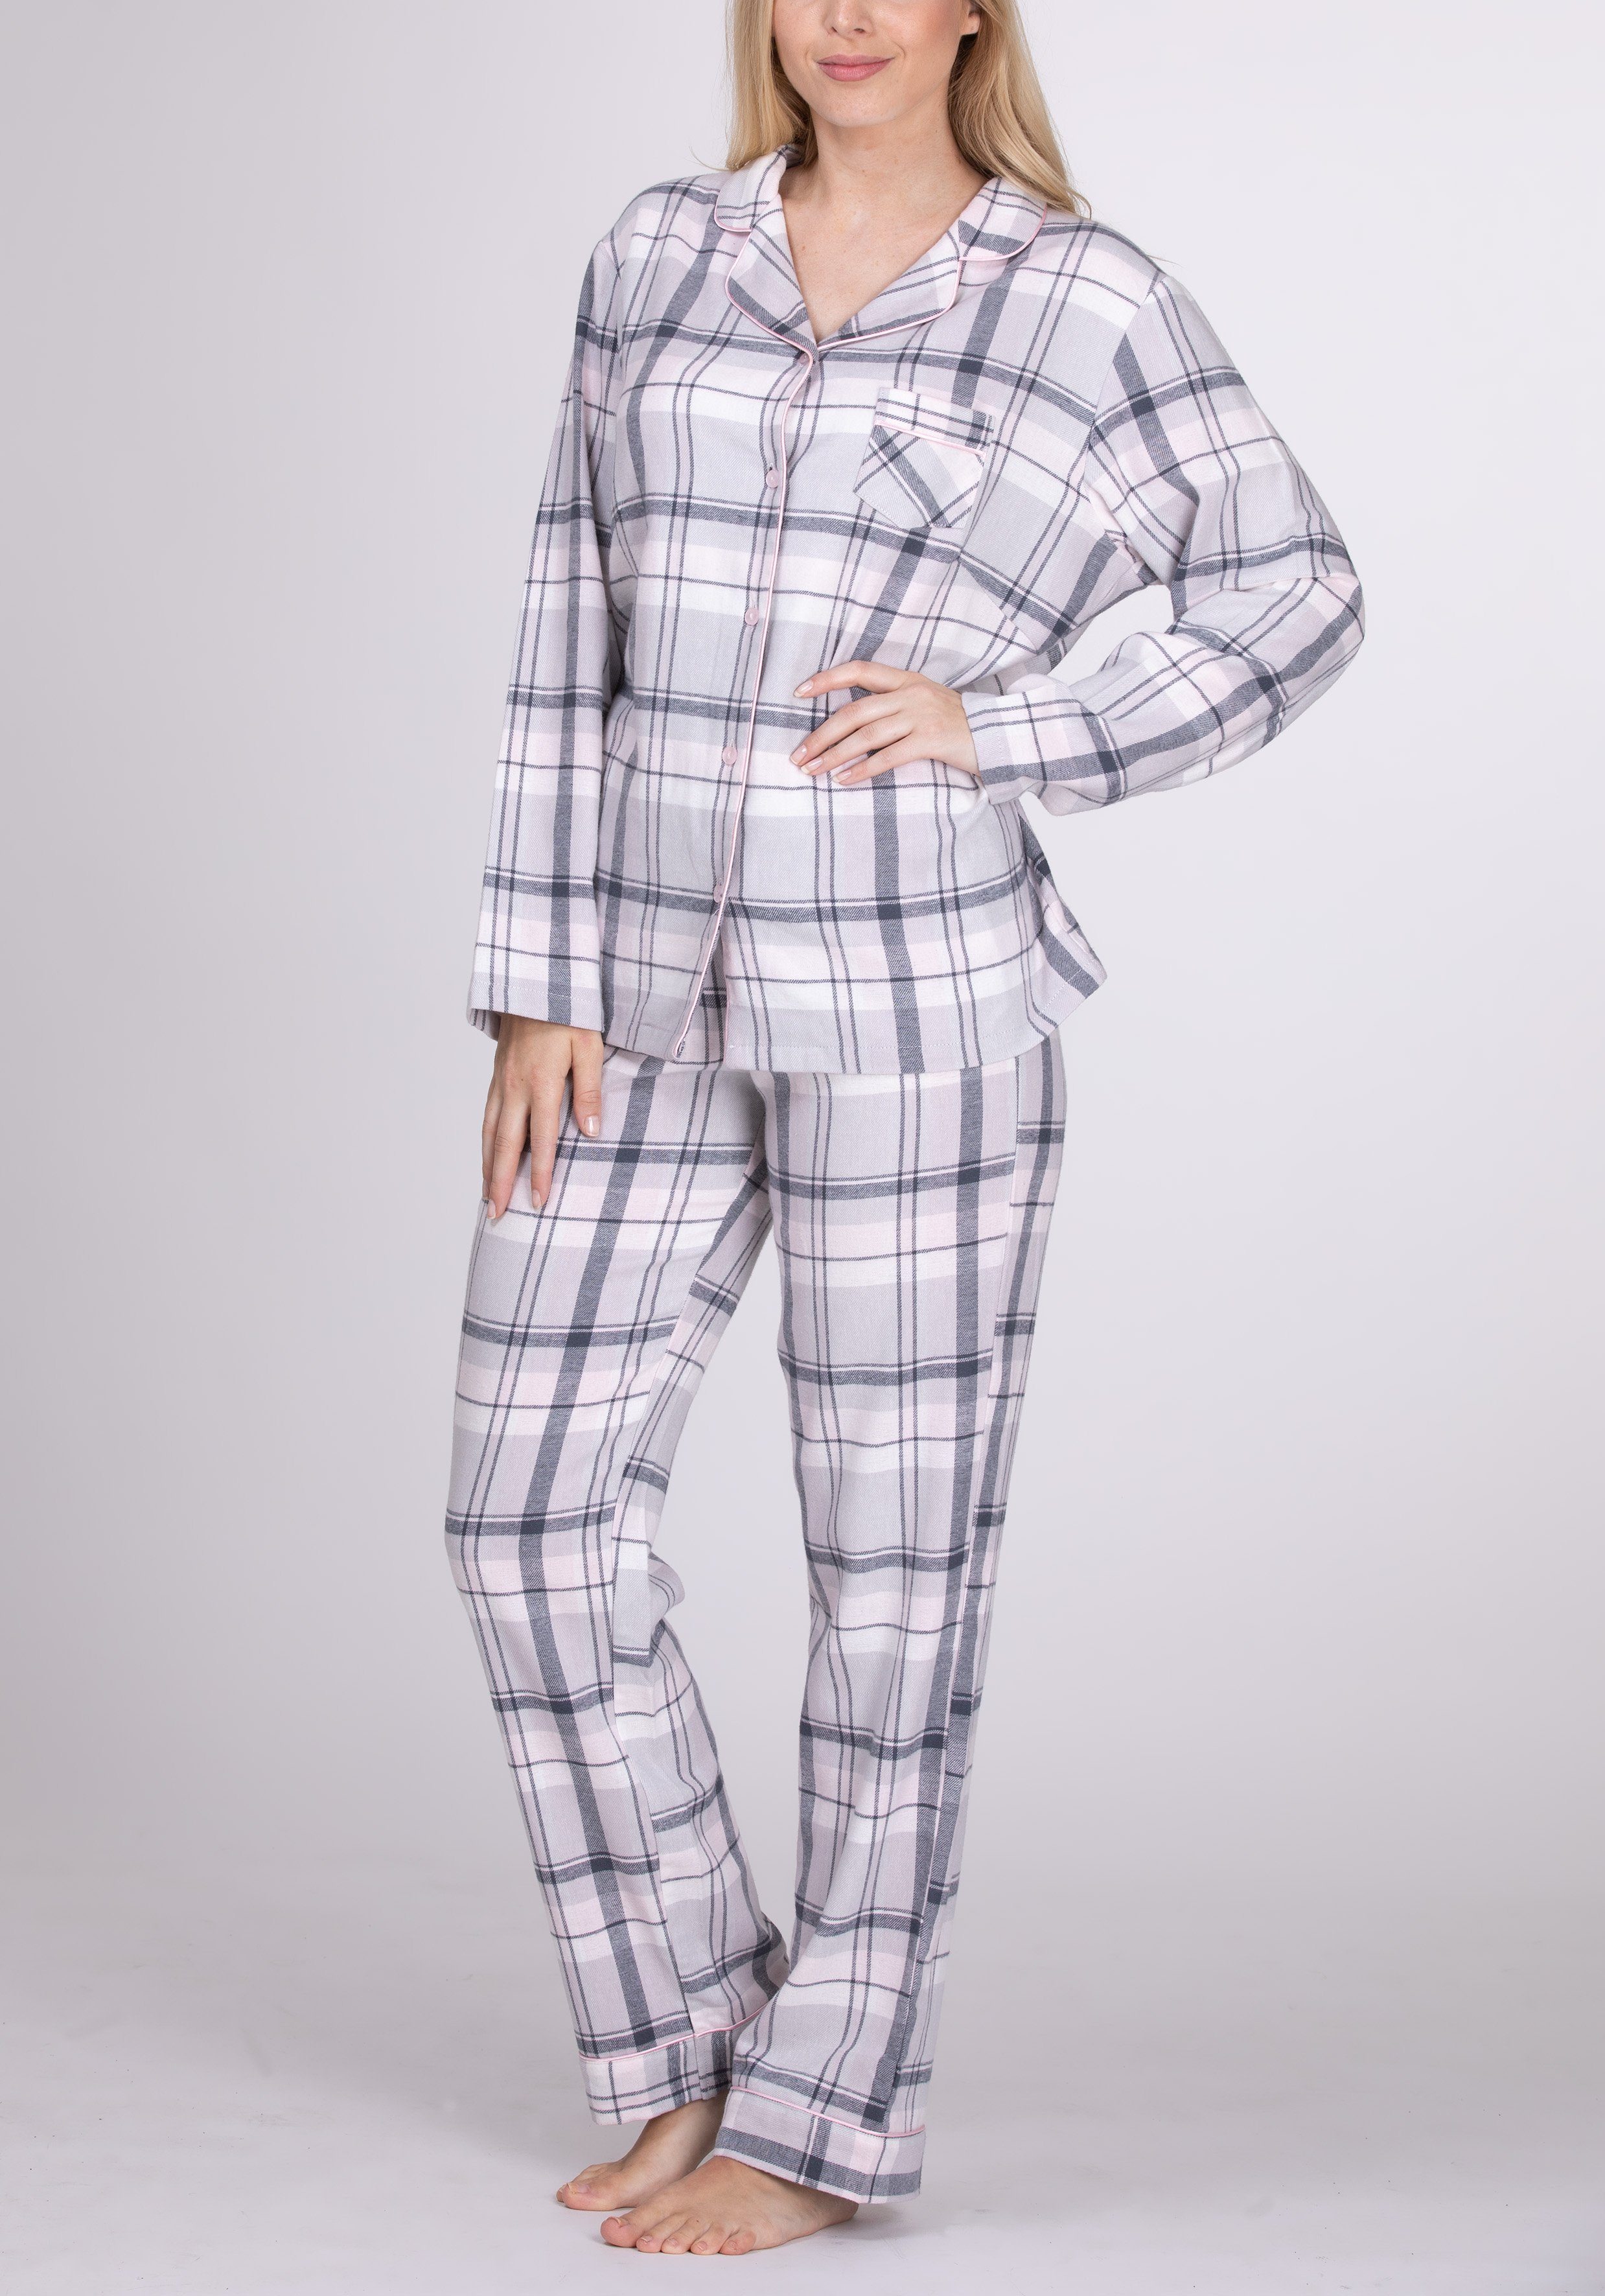 maluuna Pyjama Flanell Schlafanzug für Damen aus 100% Baumwolle